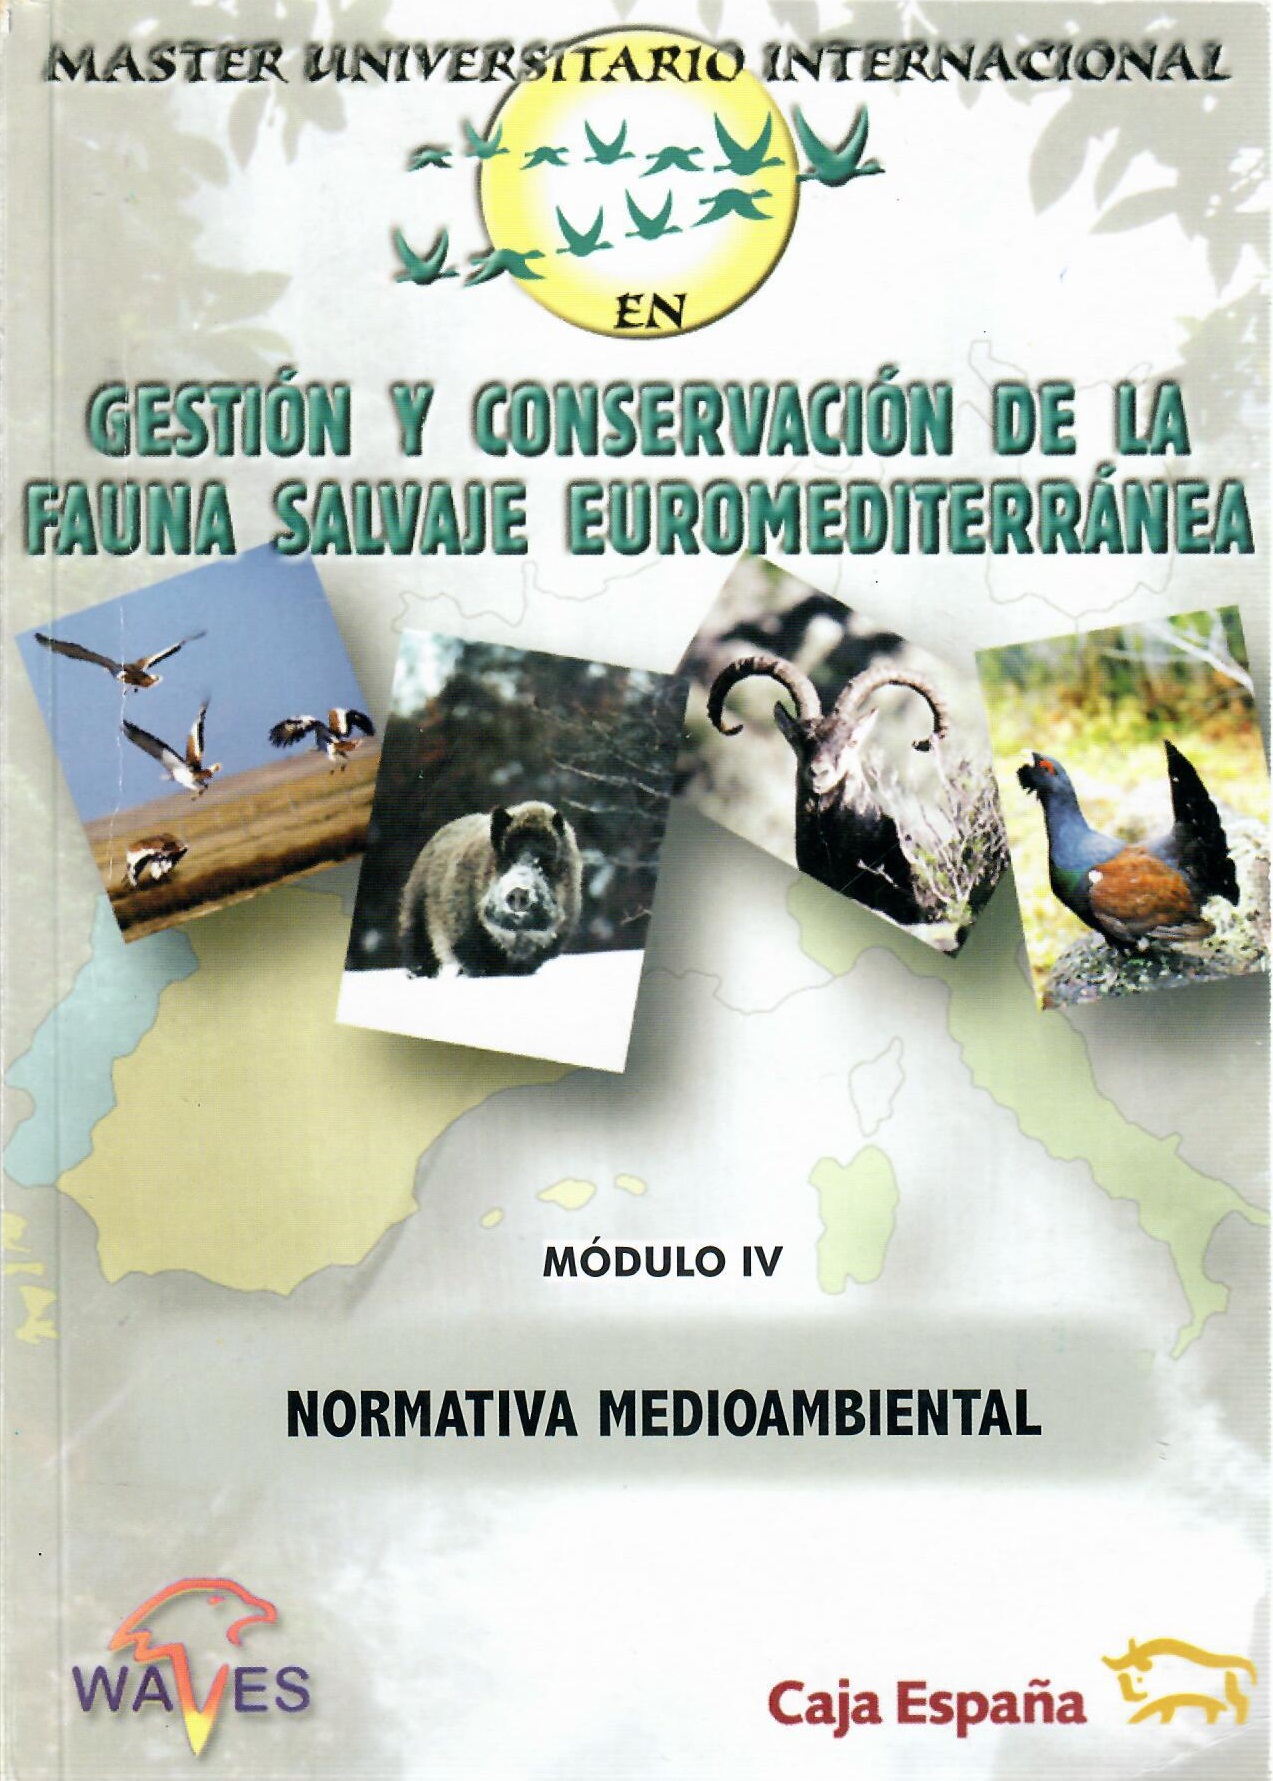 Imagen de portada del libro Master universitario internacional [en] gestión y conservación de la fauna salvaje euromediterránea. Módulo IV, Normativa medioambiental